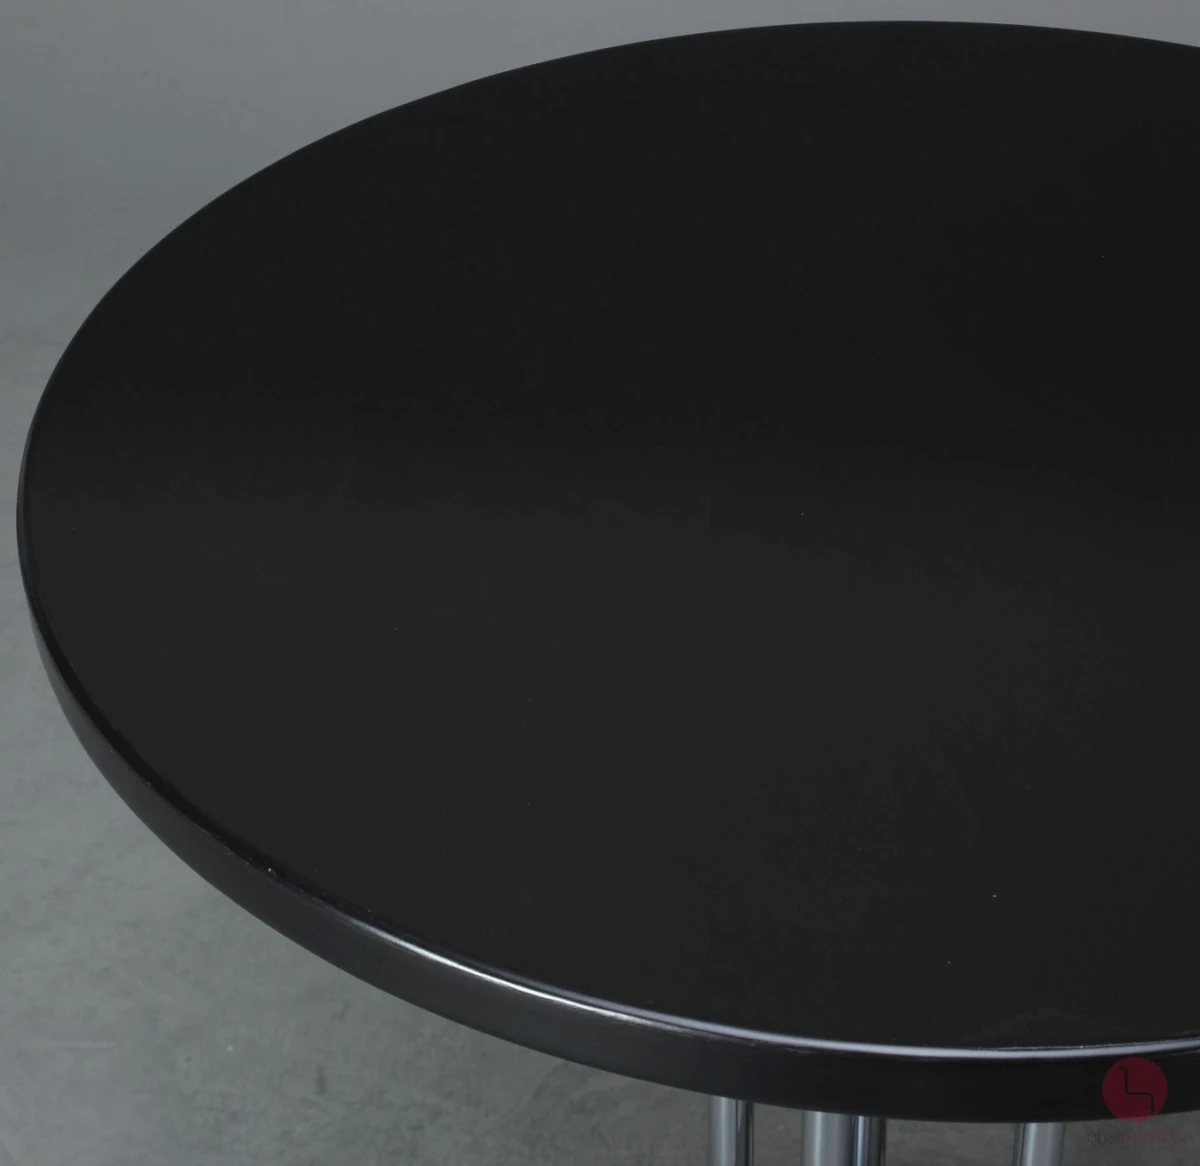 Thonet S1048 Bistro Tisch in Schwarz 70 cm - gebraucht